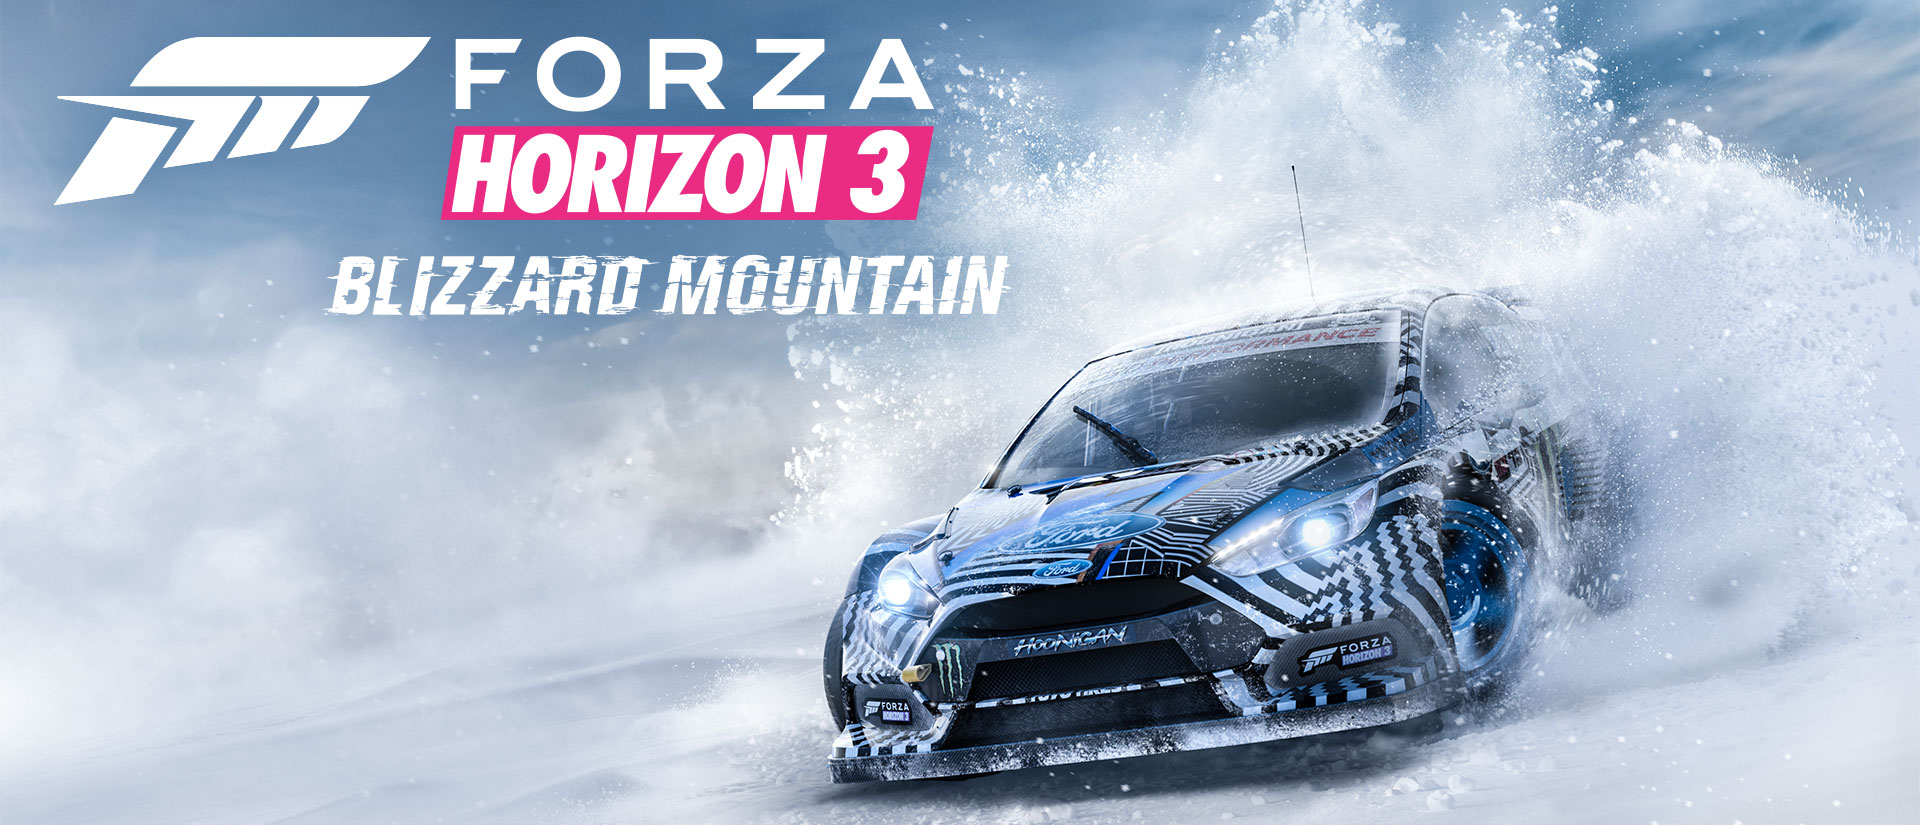 Káº¿t quáº£ hÃ¬nh áº£nh cho Forza Horizon 3